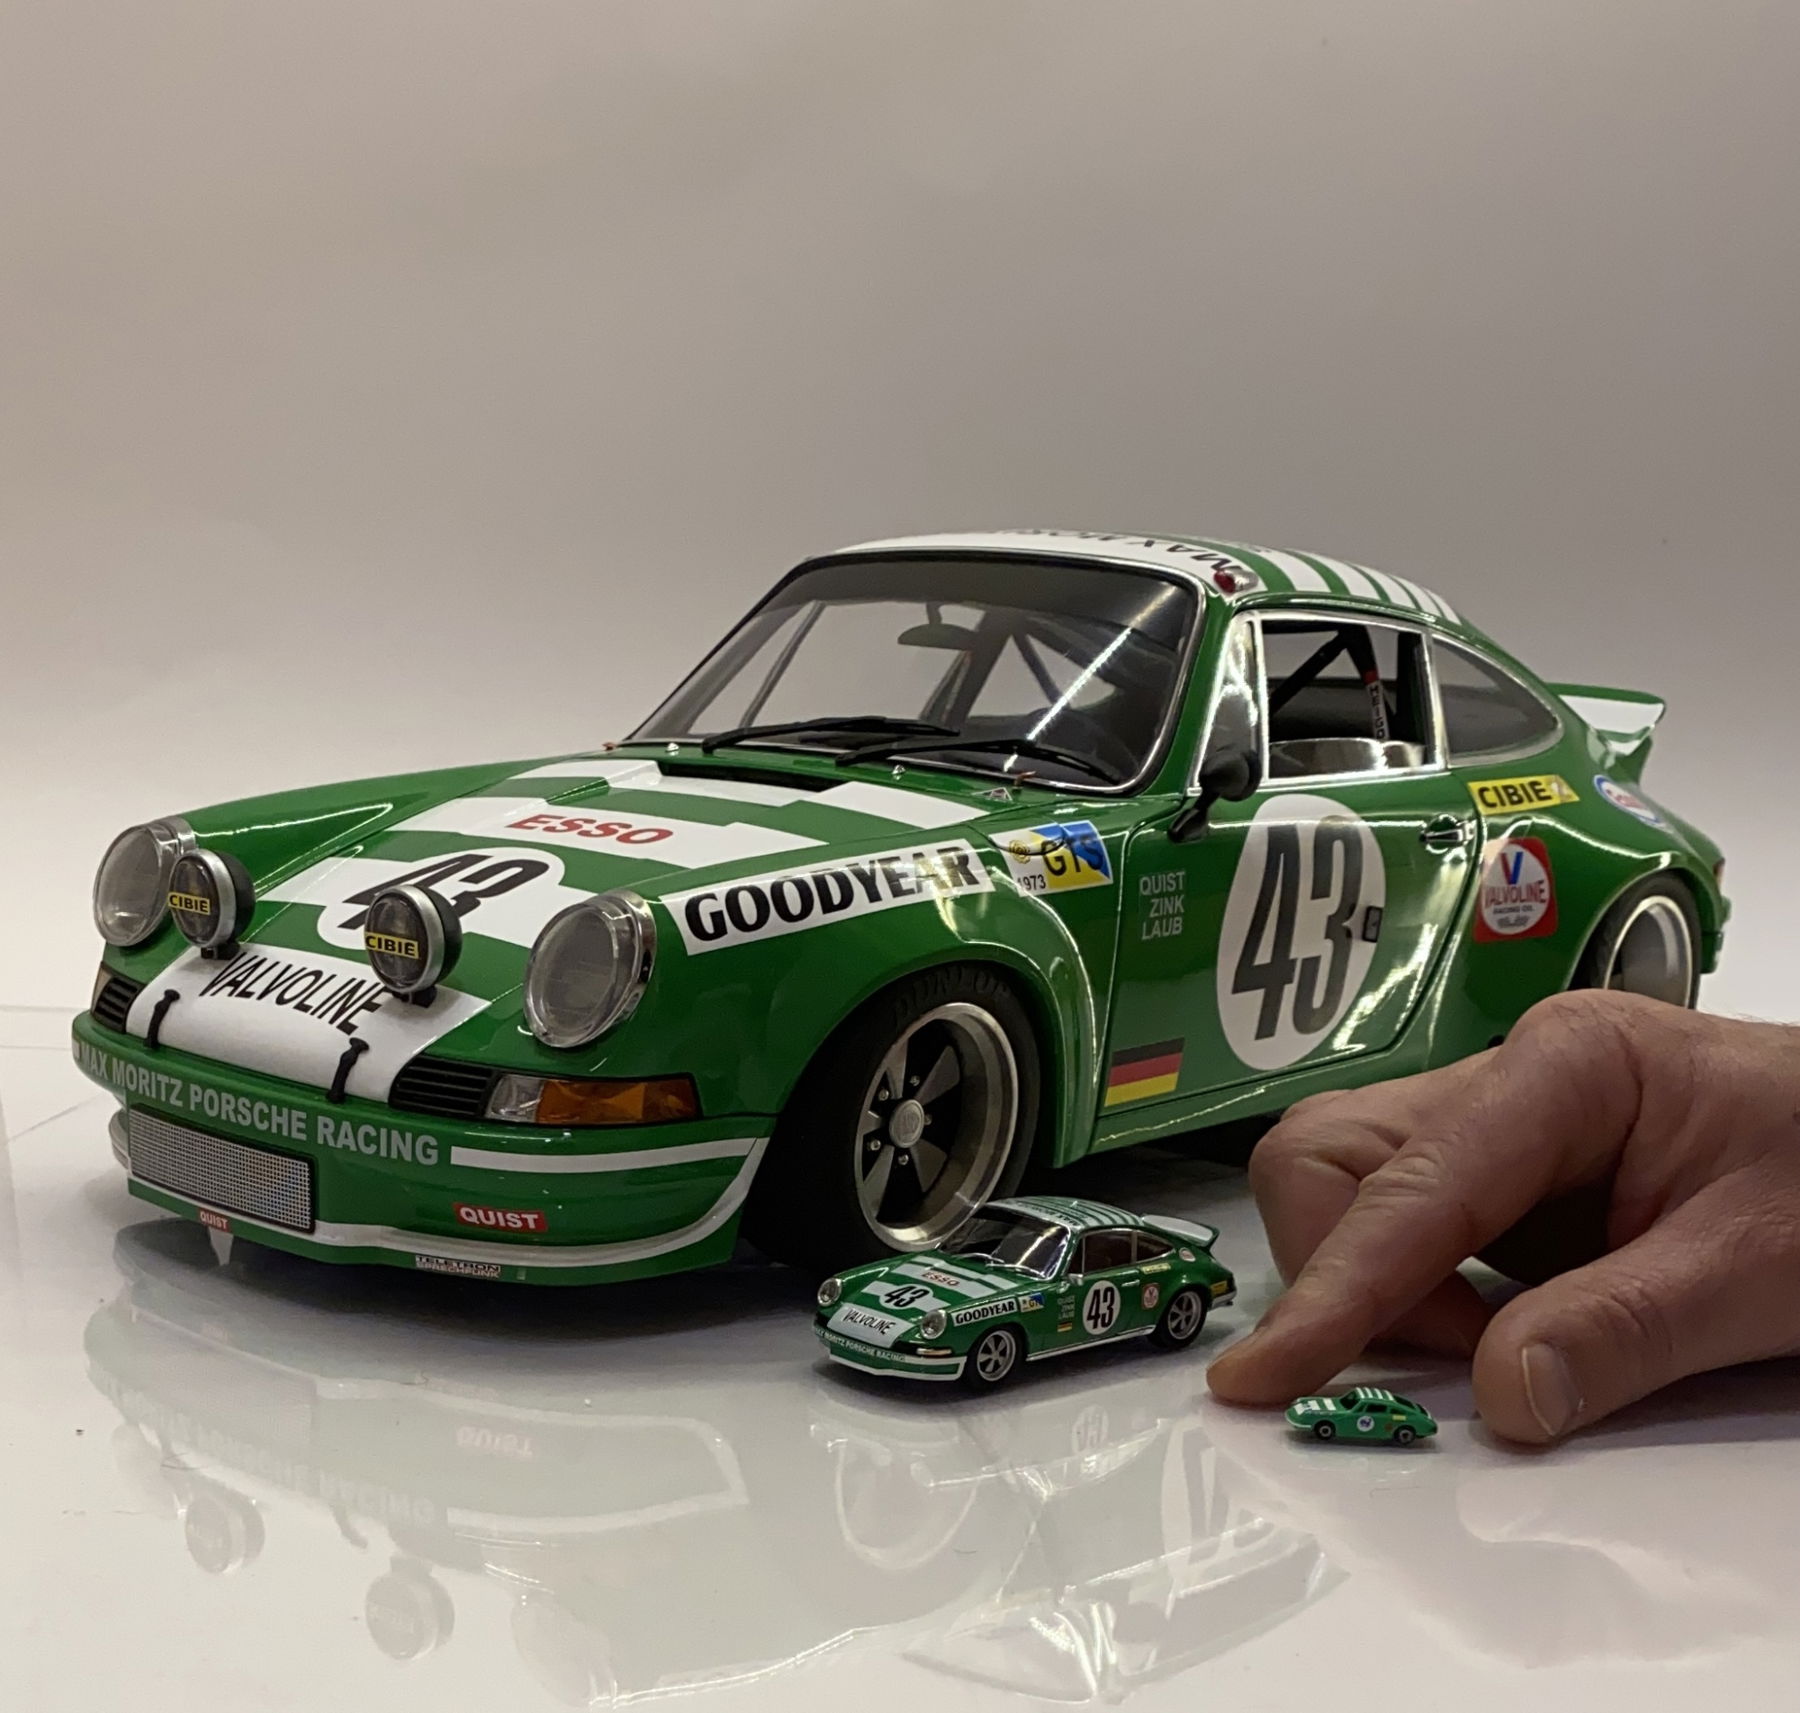 Neunellymodels - Your Porsche in 1:18 - elferspot.com - Magazine